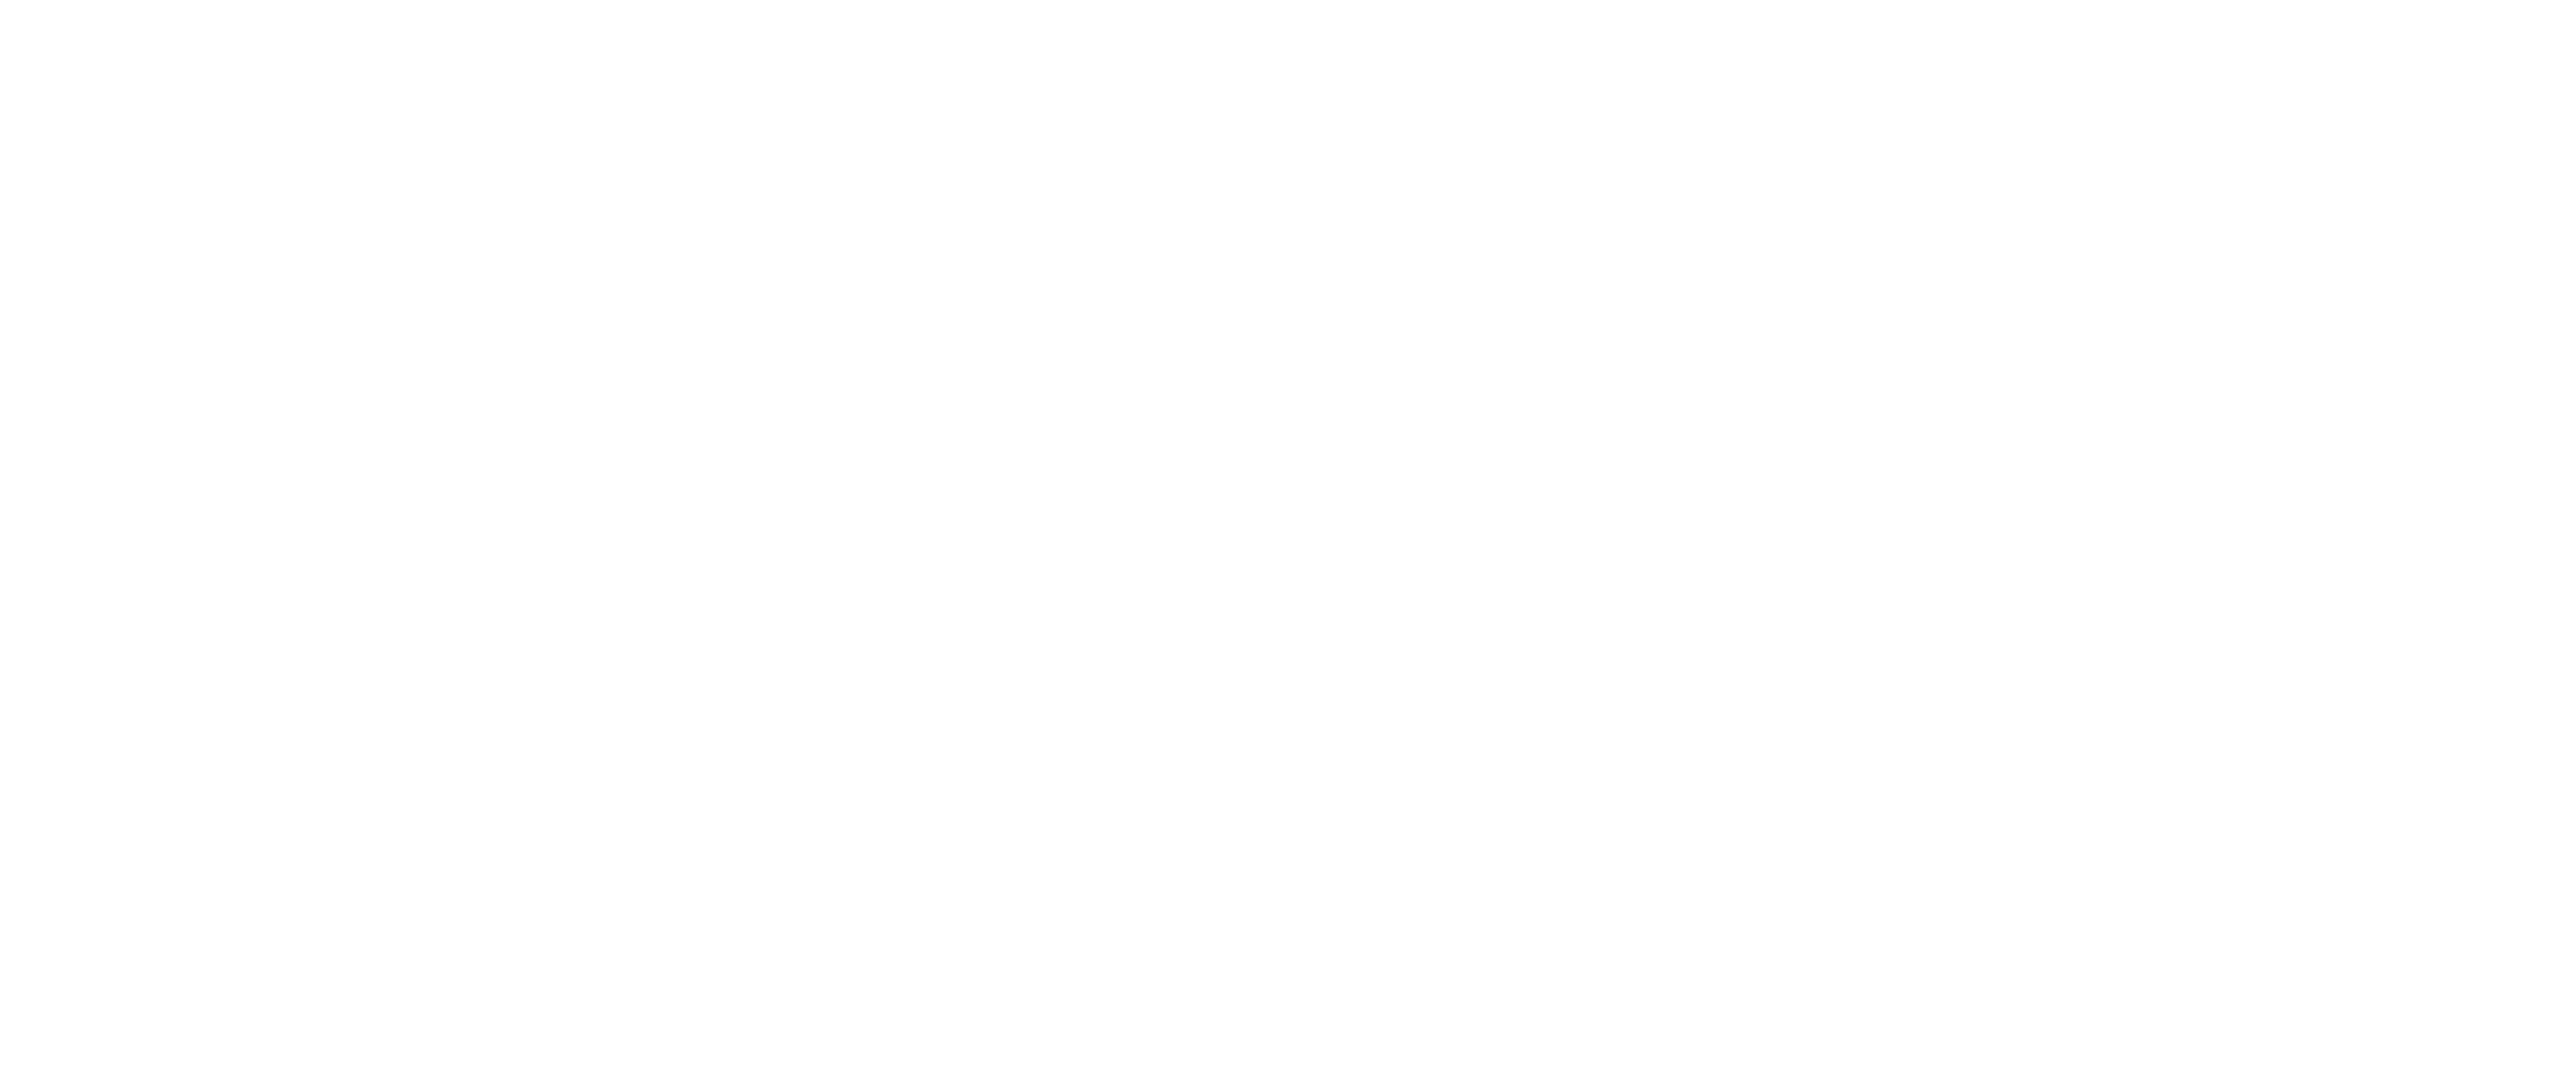 The JG McHugh Group